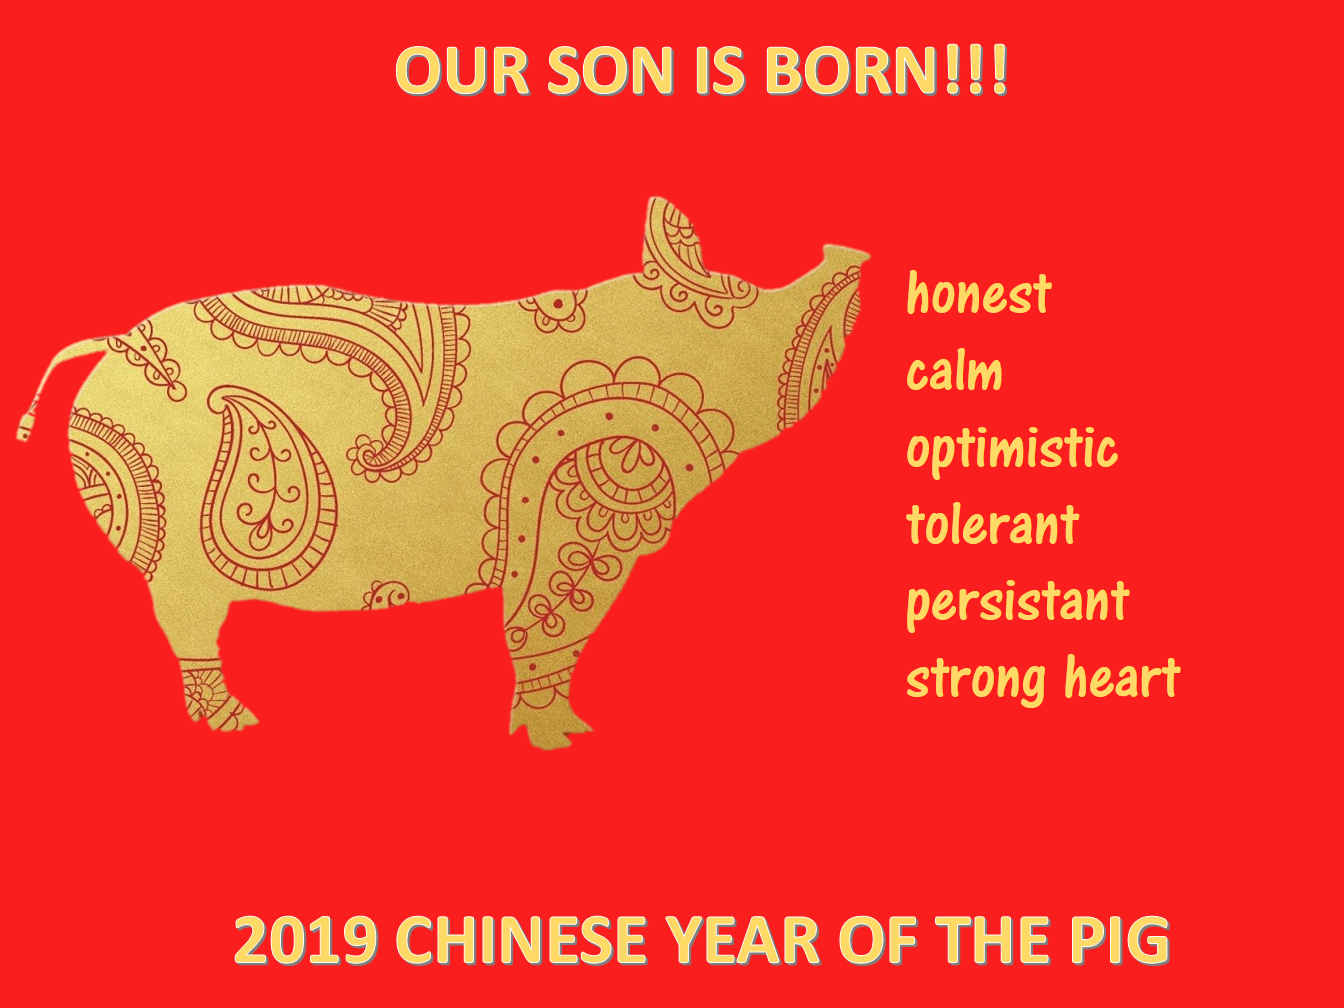 中国新年猪年儿子出生 模板